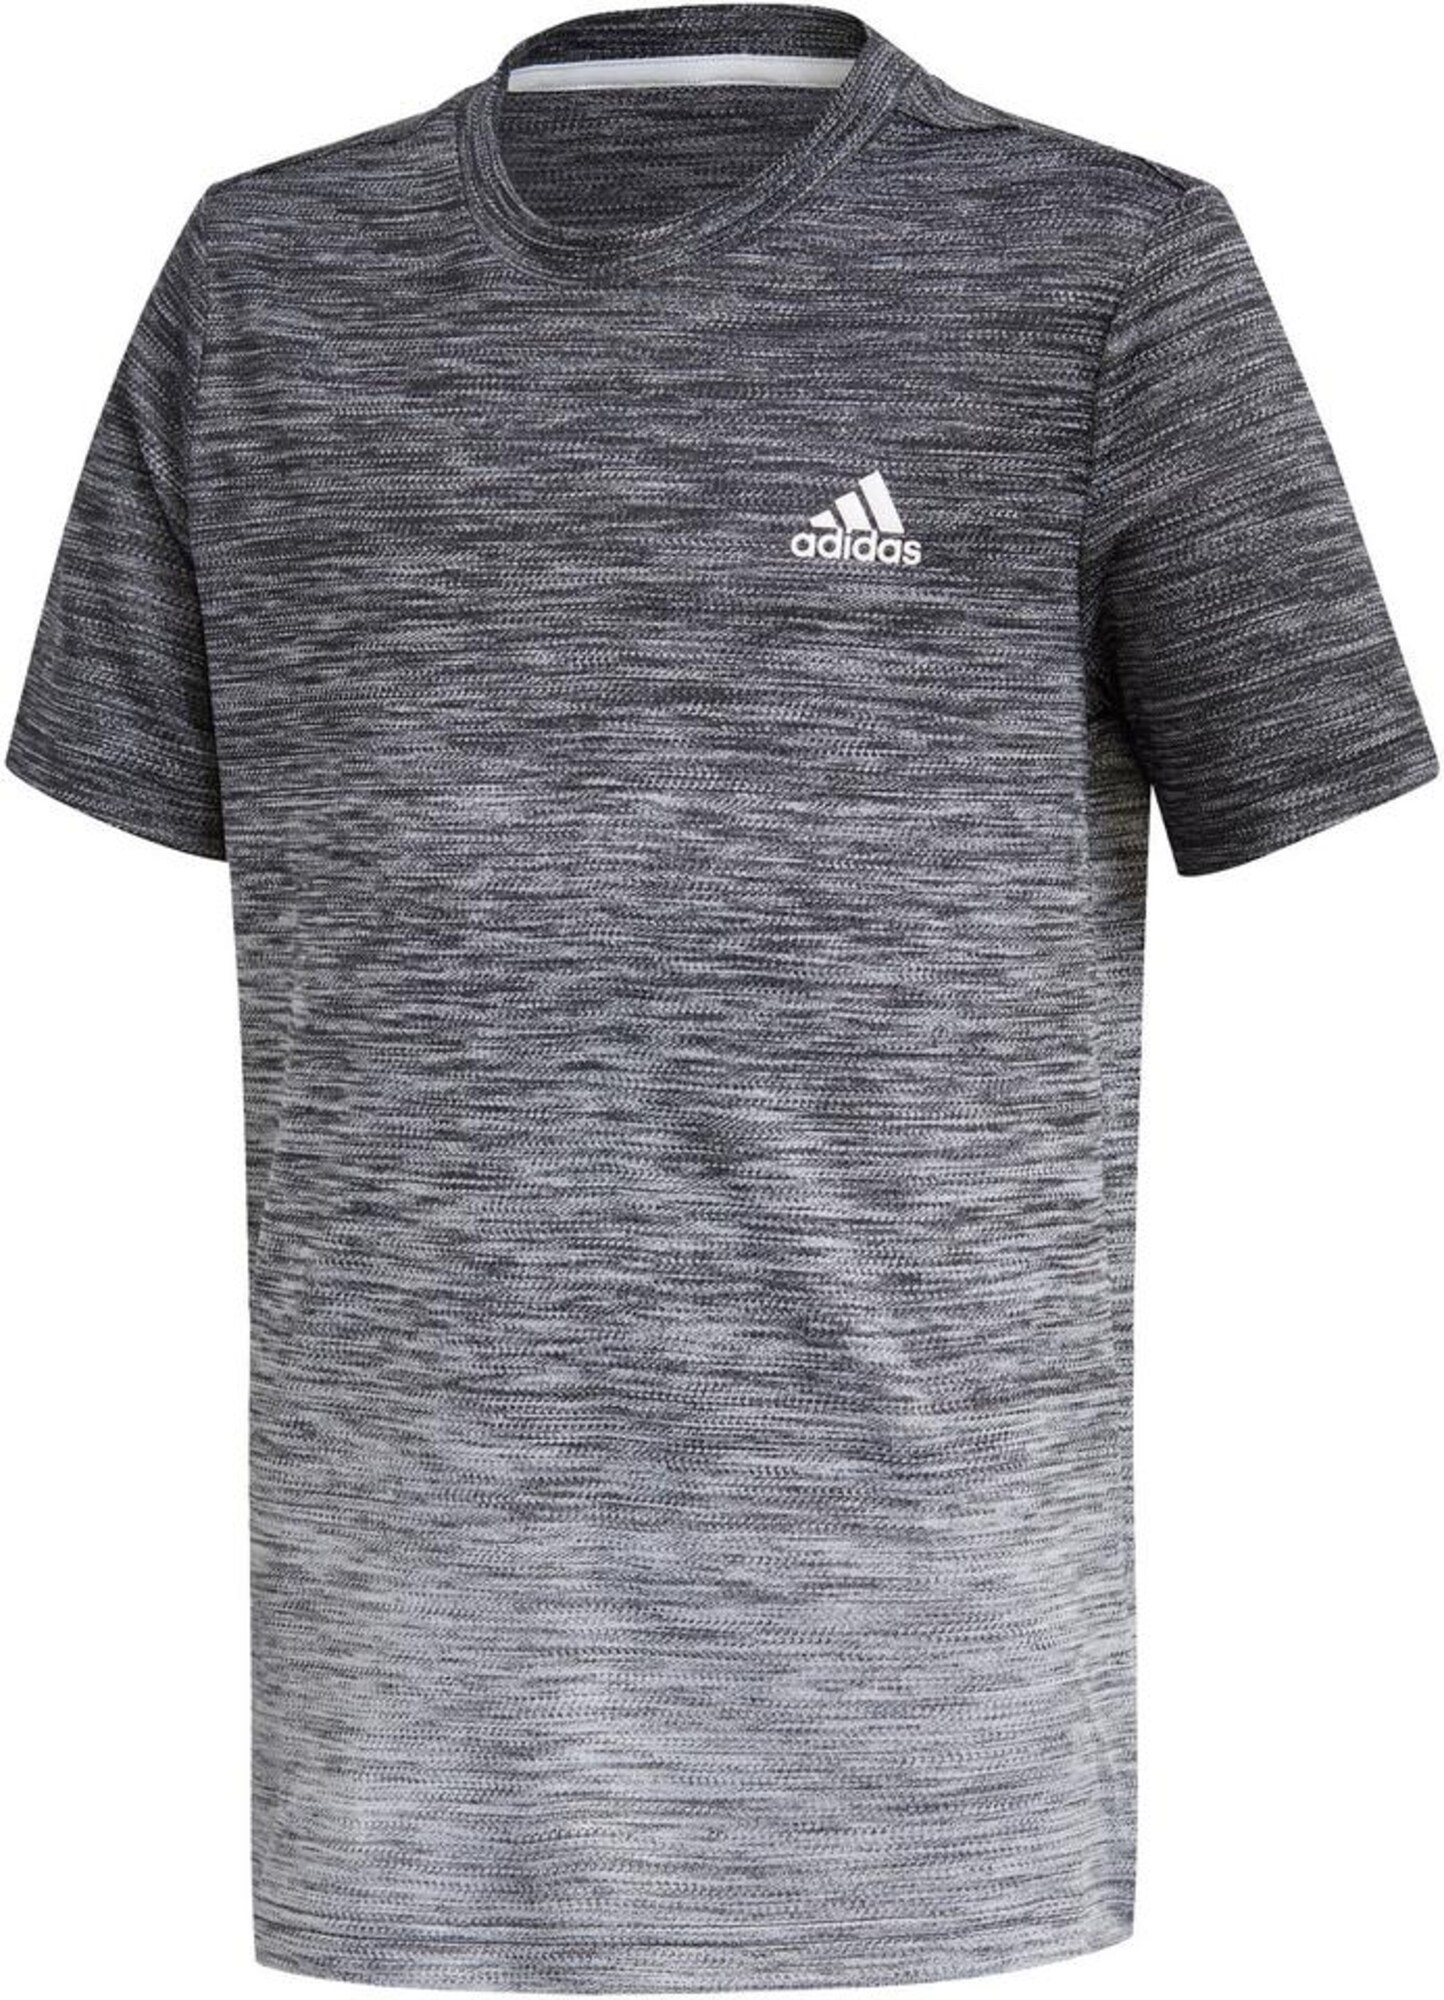 ADIDAS PERFORMANCE Sportiniai marškinėliai  tamsiai pilka / šviesiai pilka / antracito / balta